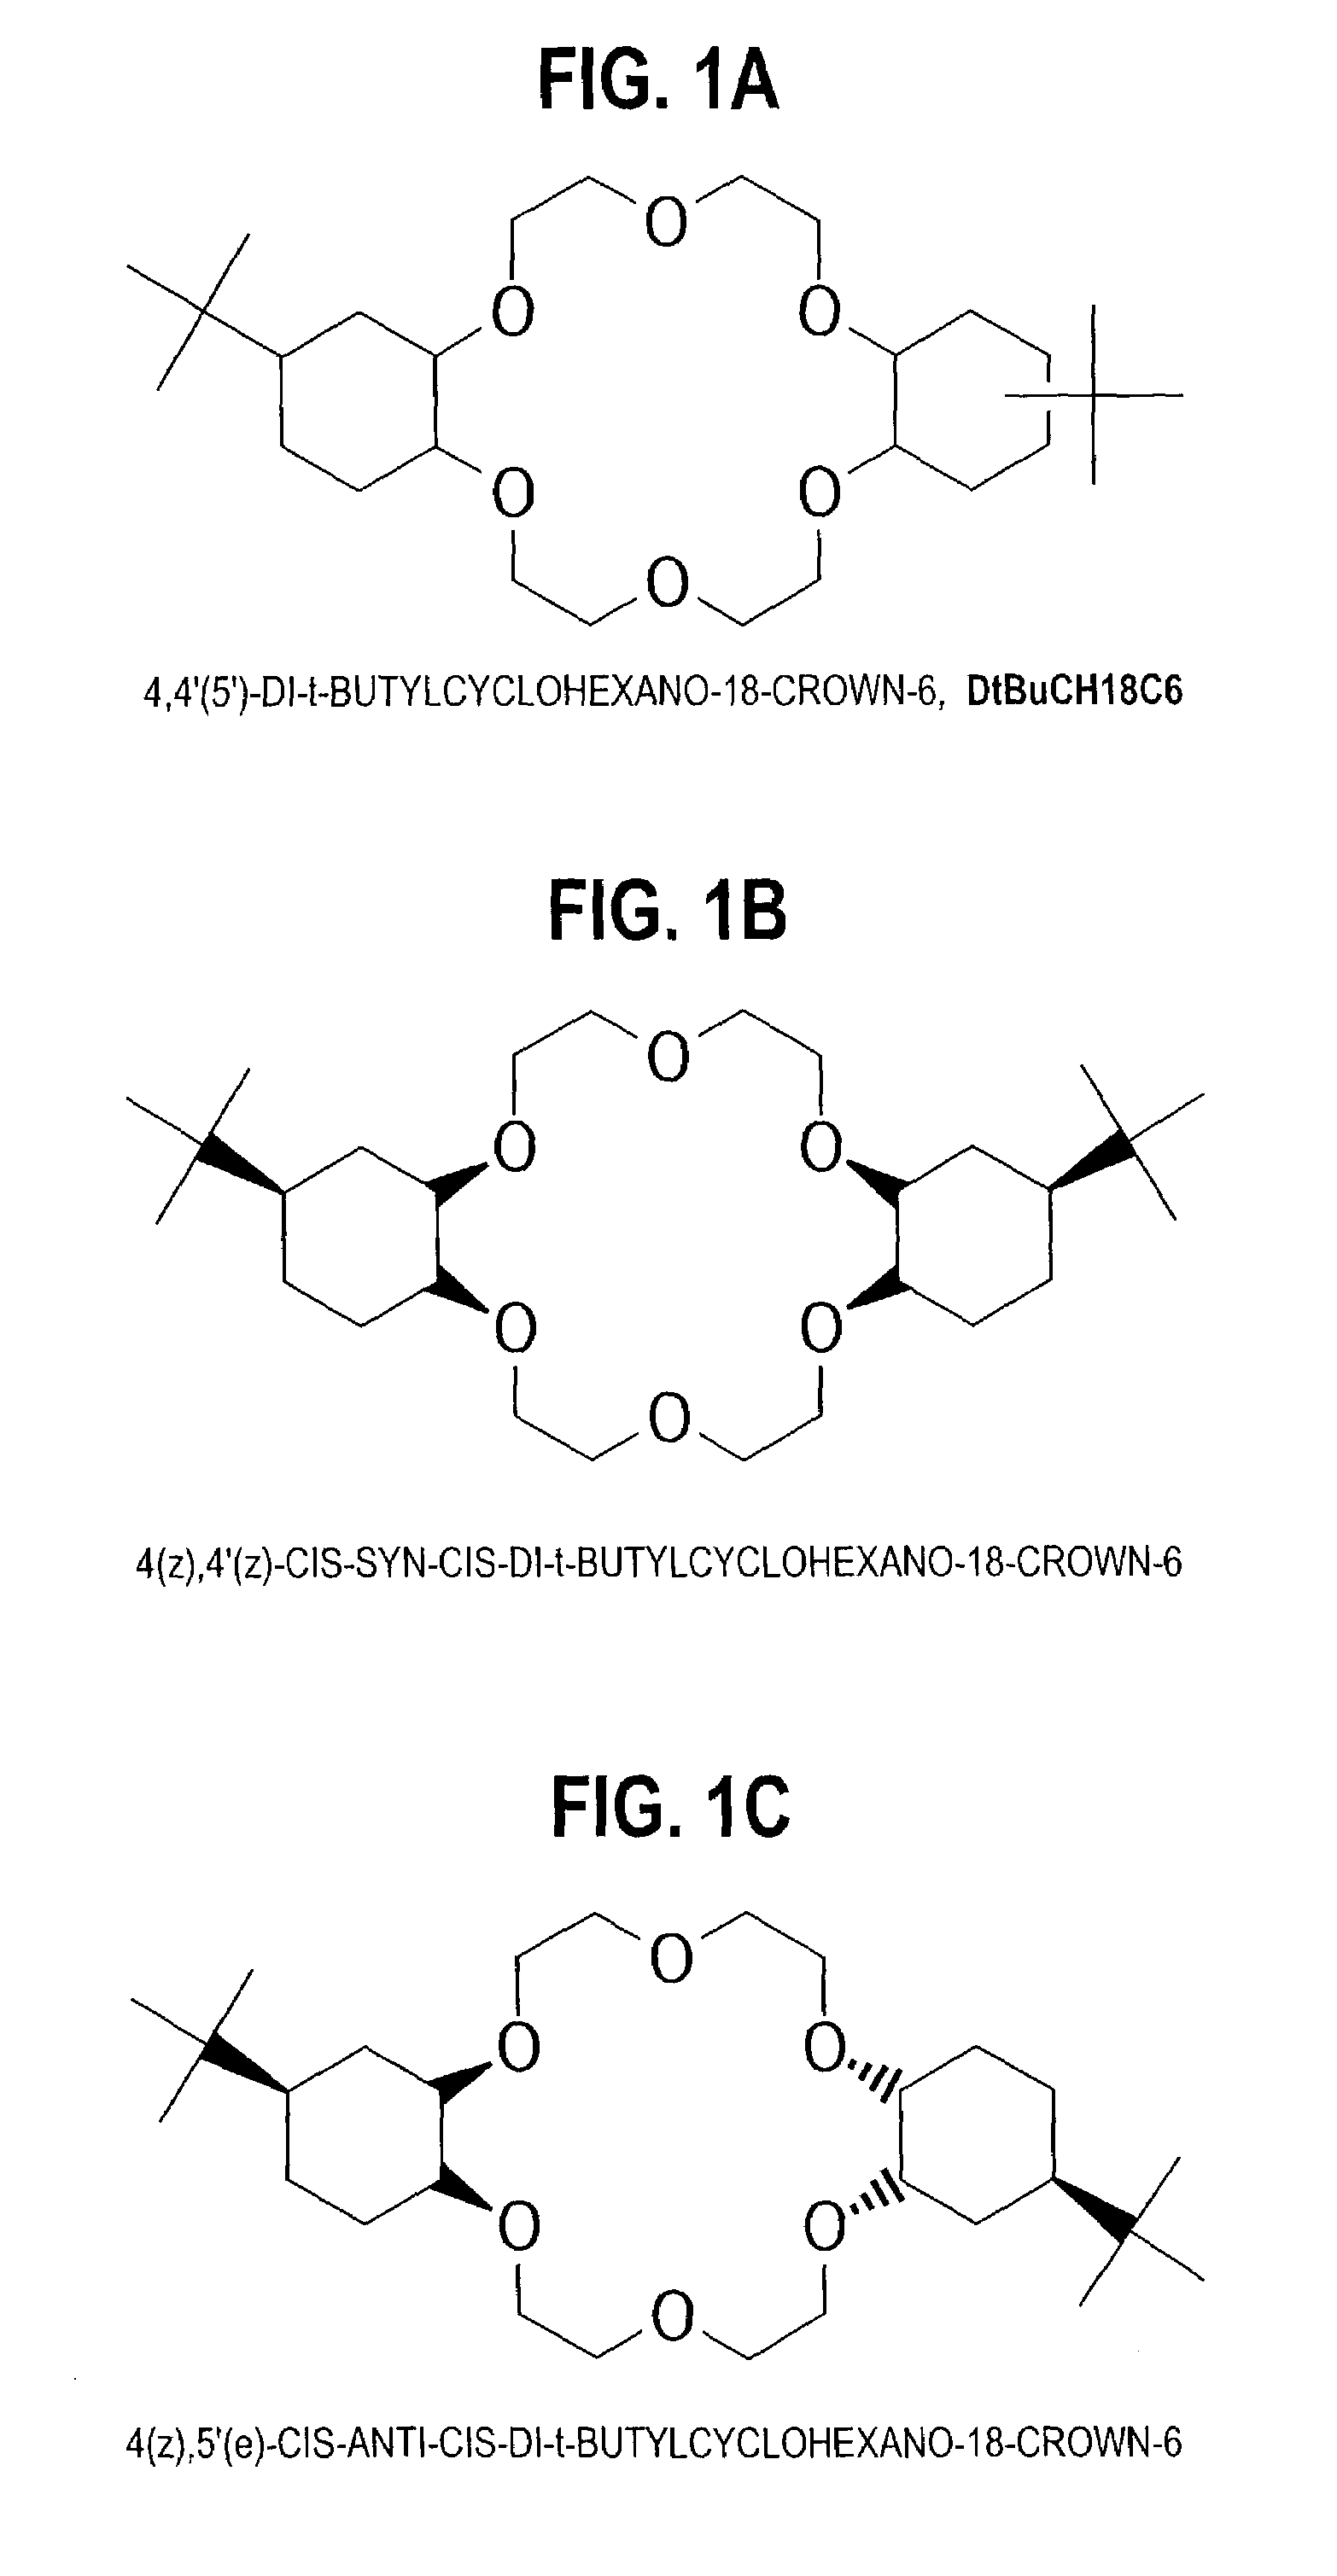 Purification of 4,4'(5')- di-t-butylcyclohexano-18-crown-6